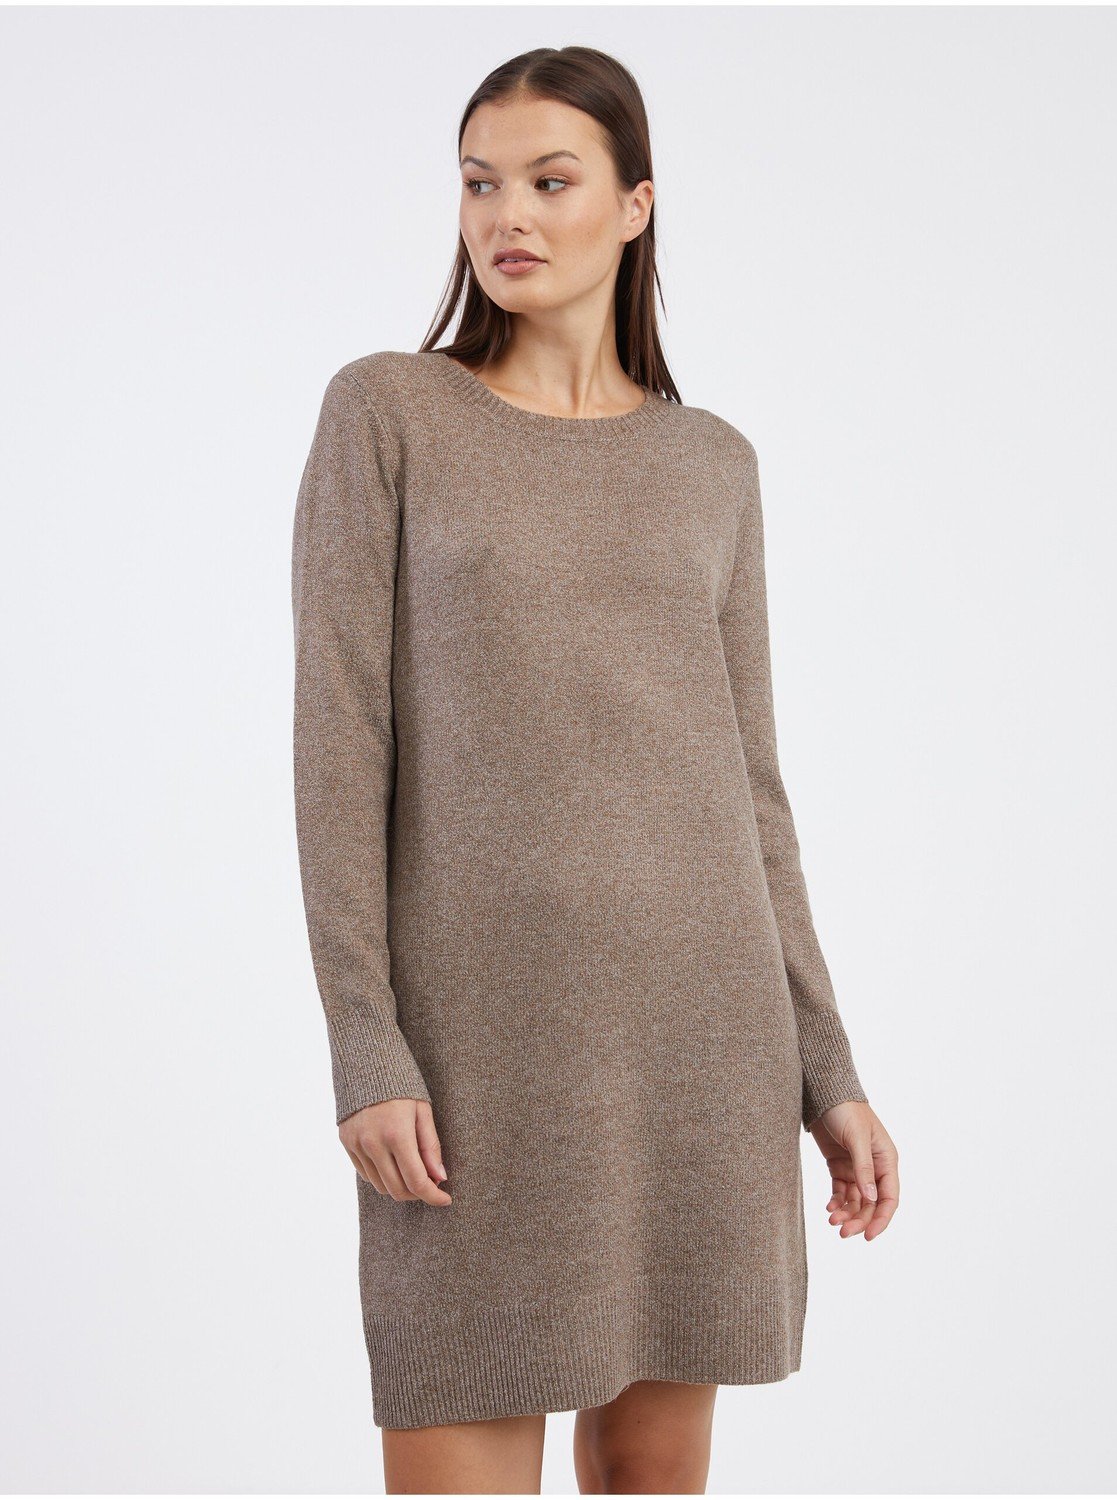 Hnědé dámské žíhané svetrové šaty ONLY Rica - Dámské